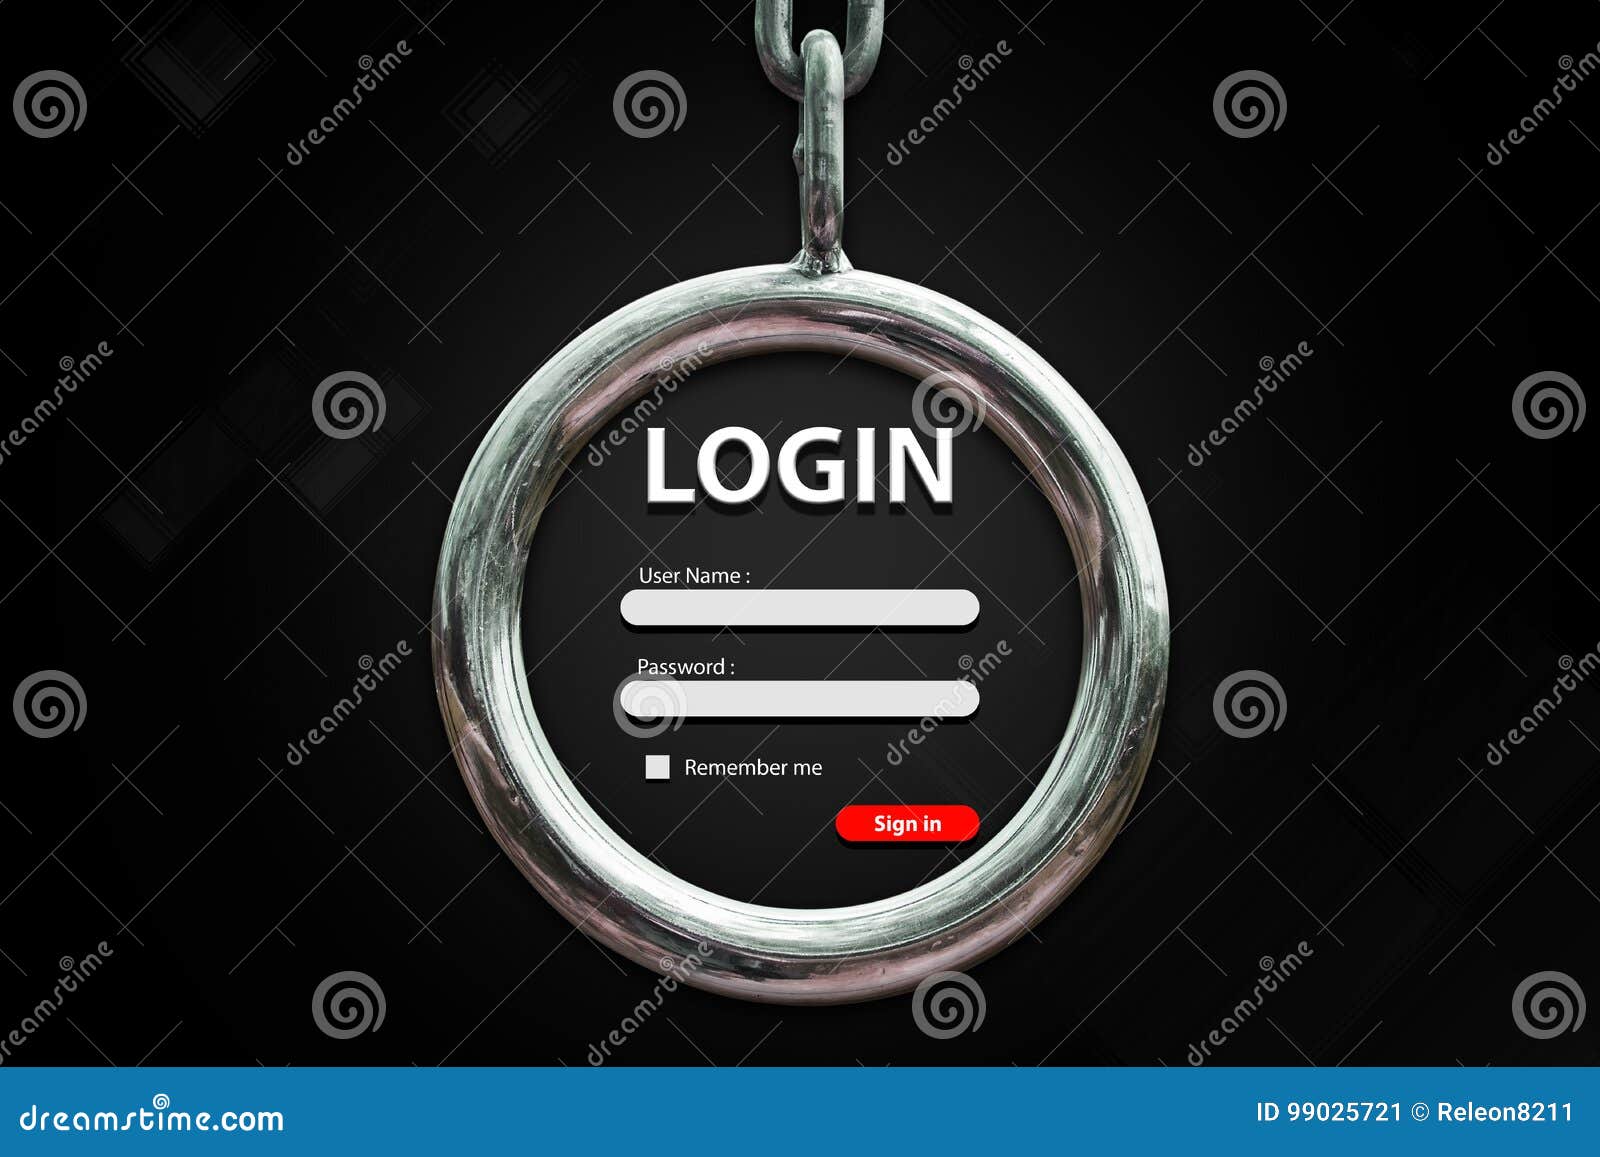 user login background images